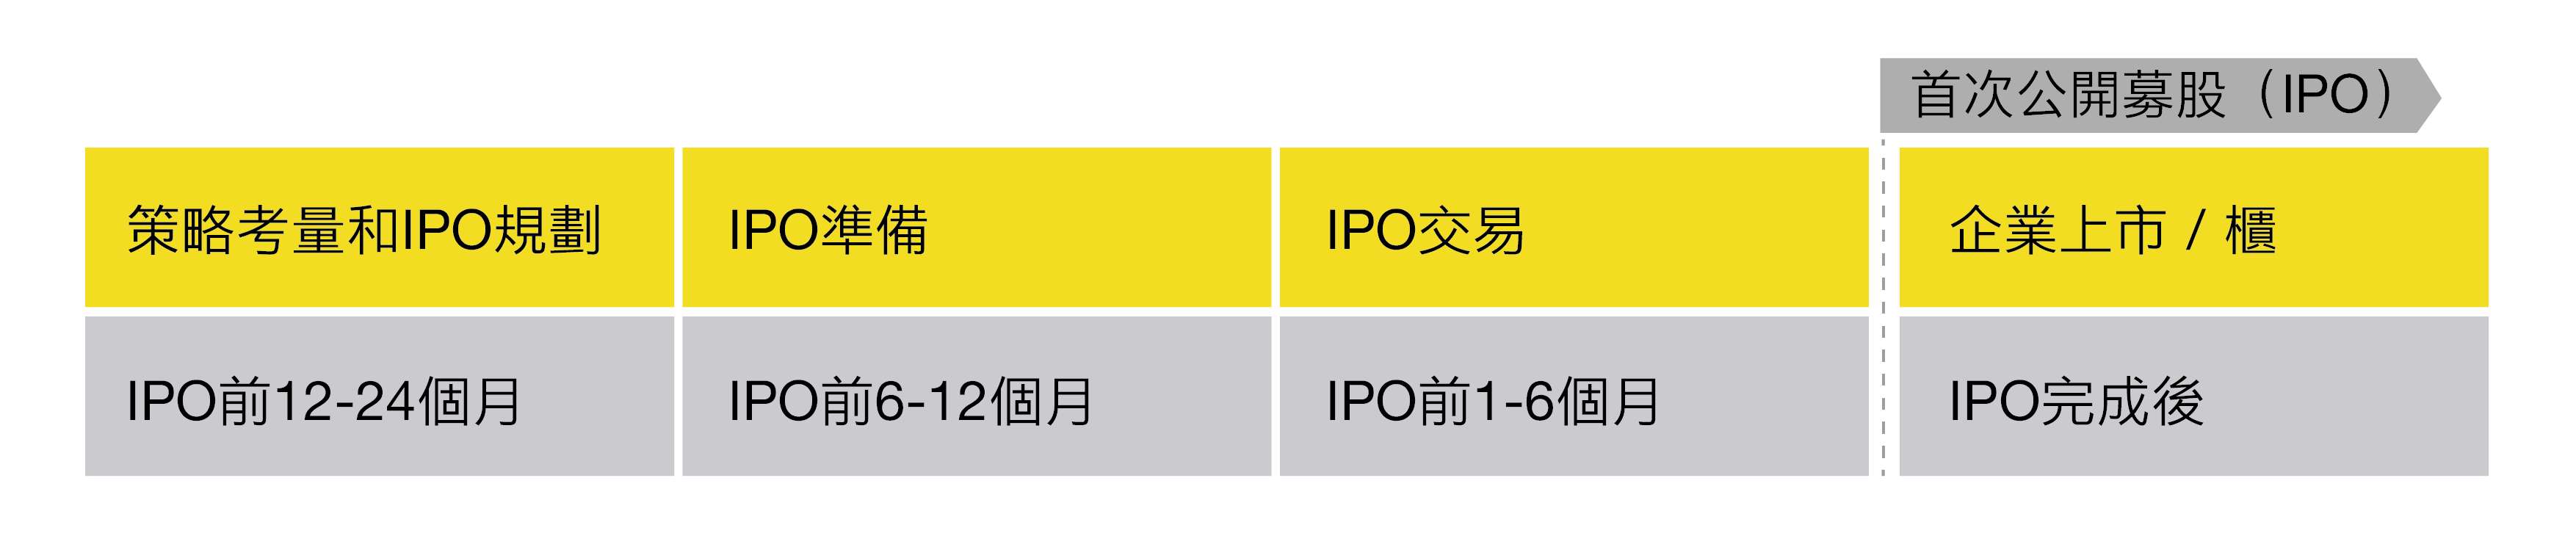 
            安永IPO價值之旅
        